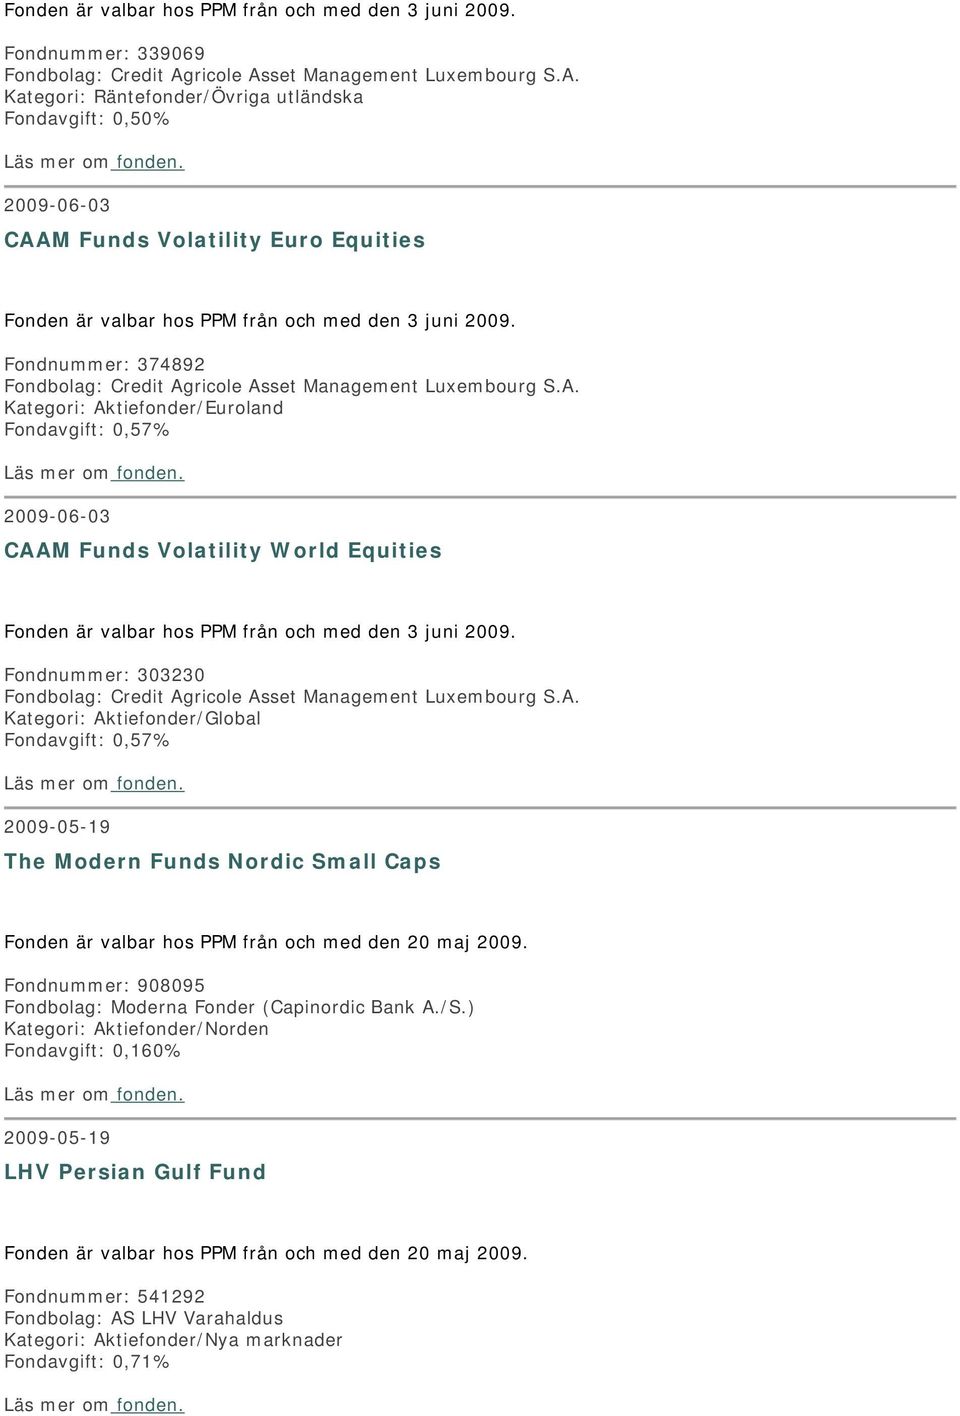 Fondnummer: 374892 Fondbolag: Credit Agricole Asset Management Luxembourg S.A. Kategori: Aktiefonder/Euroland Fondavgift: 0,57% 2009-06-03 CAAM Funds Volatility World Equities Fonden är valbar hos PPM från och med den 3 juni 2009.